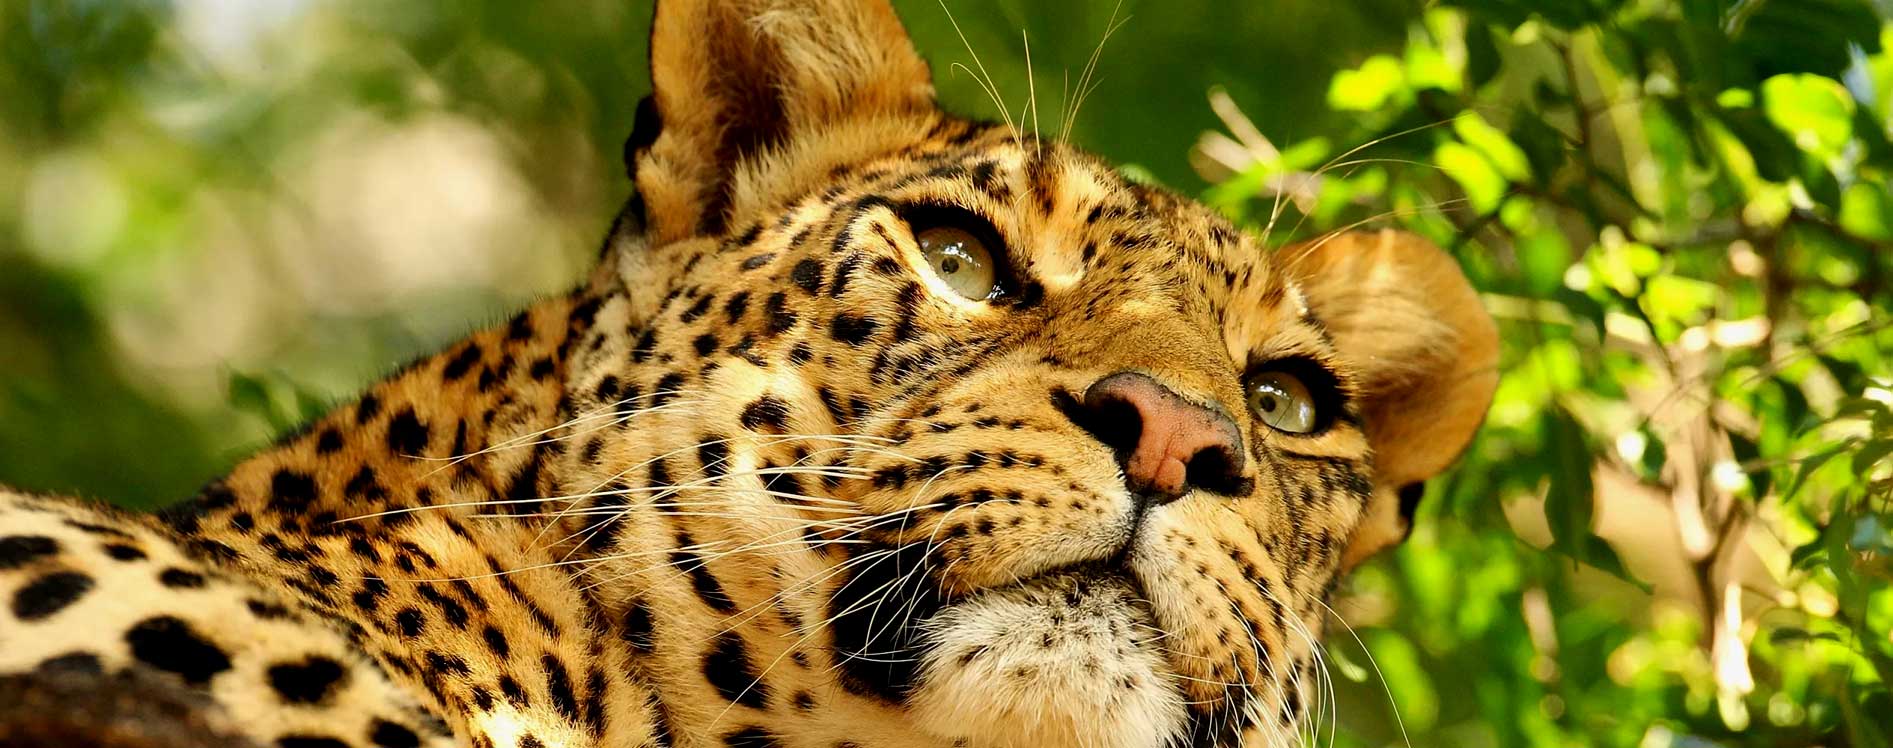 leopards-in-uganda